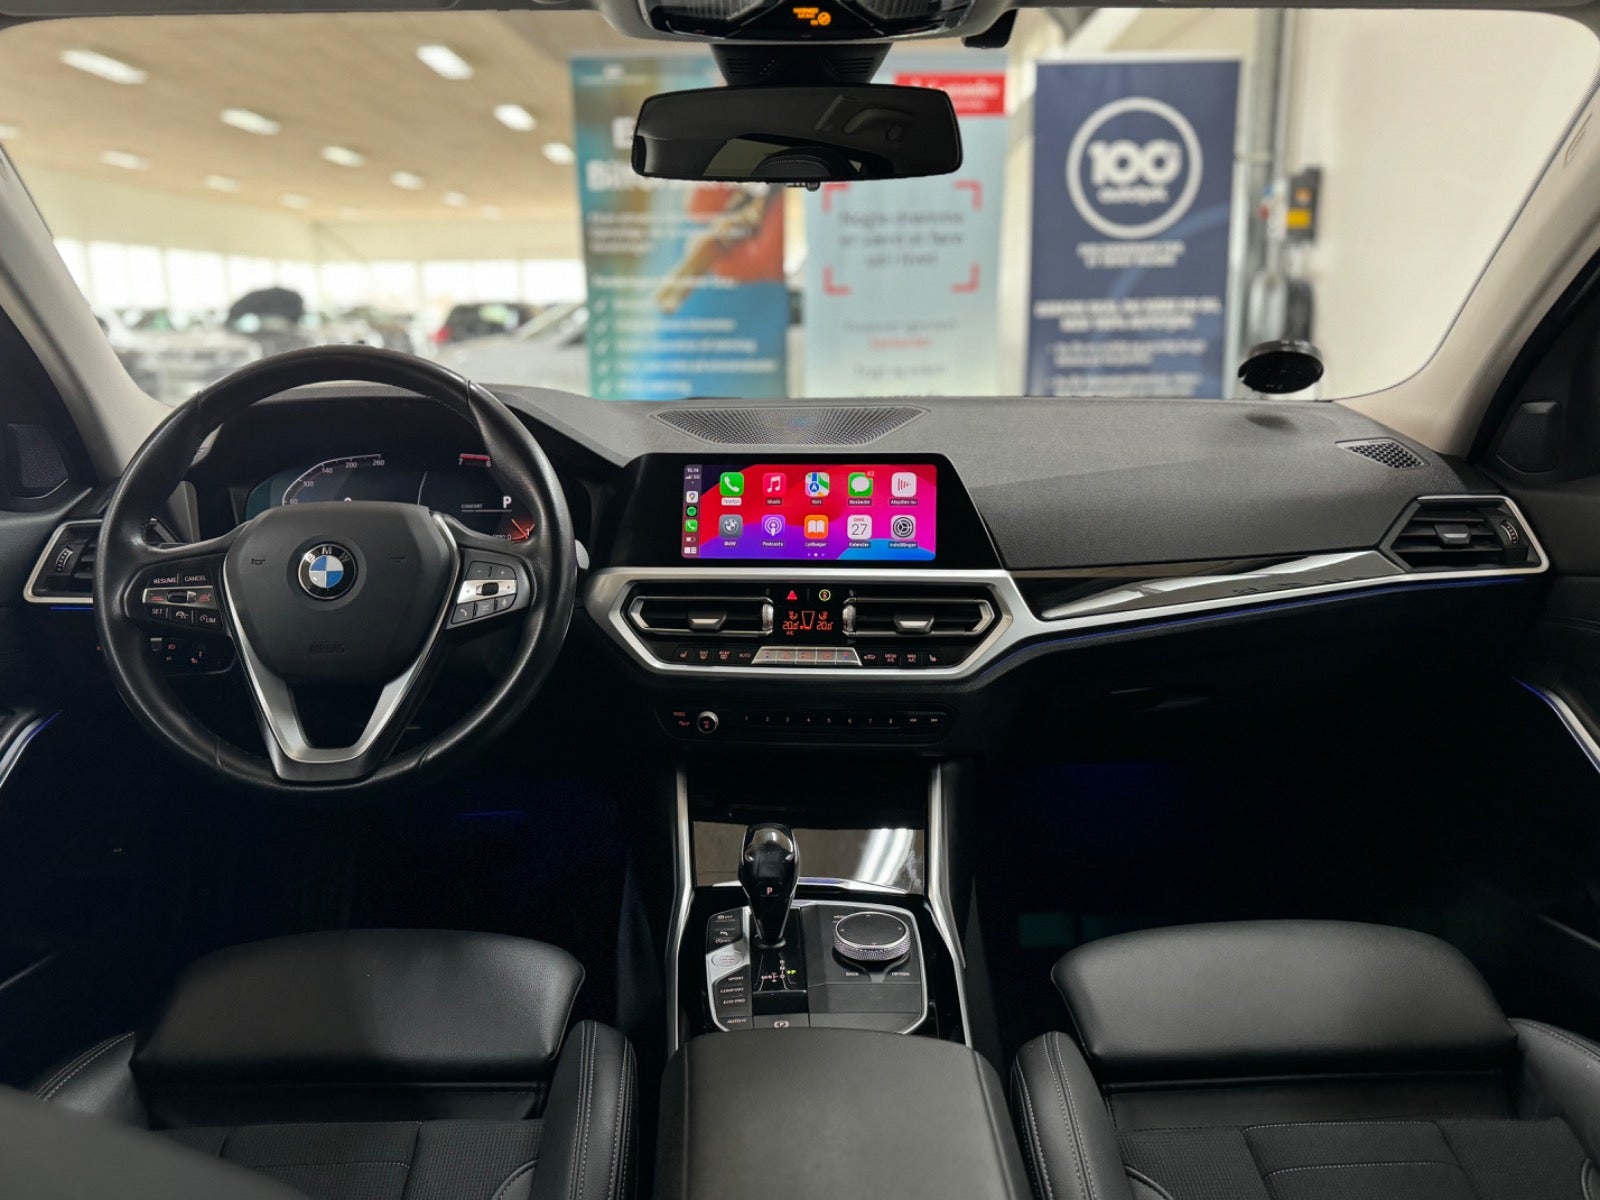 BMW 320i 2020